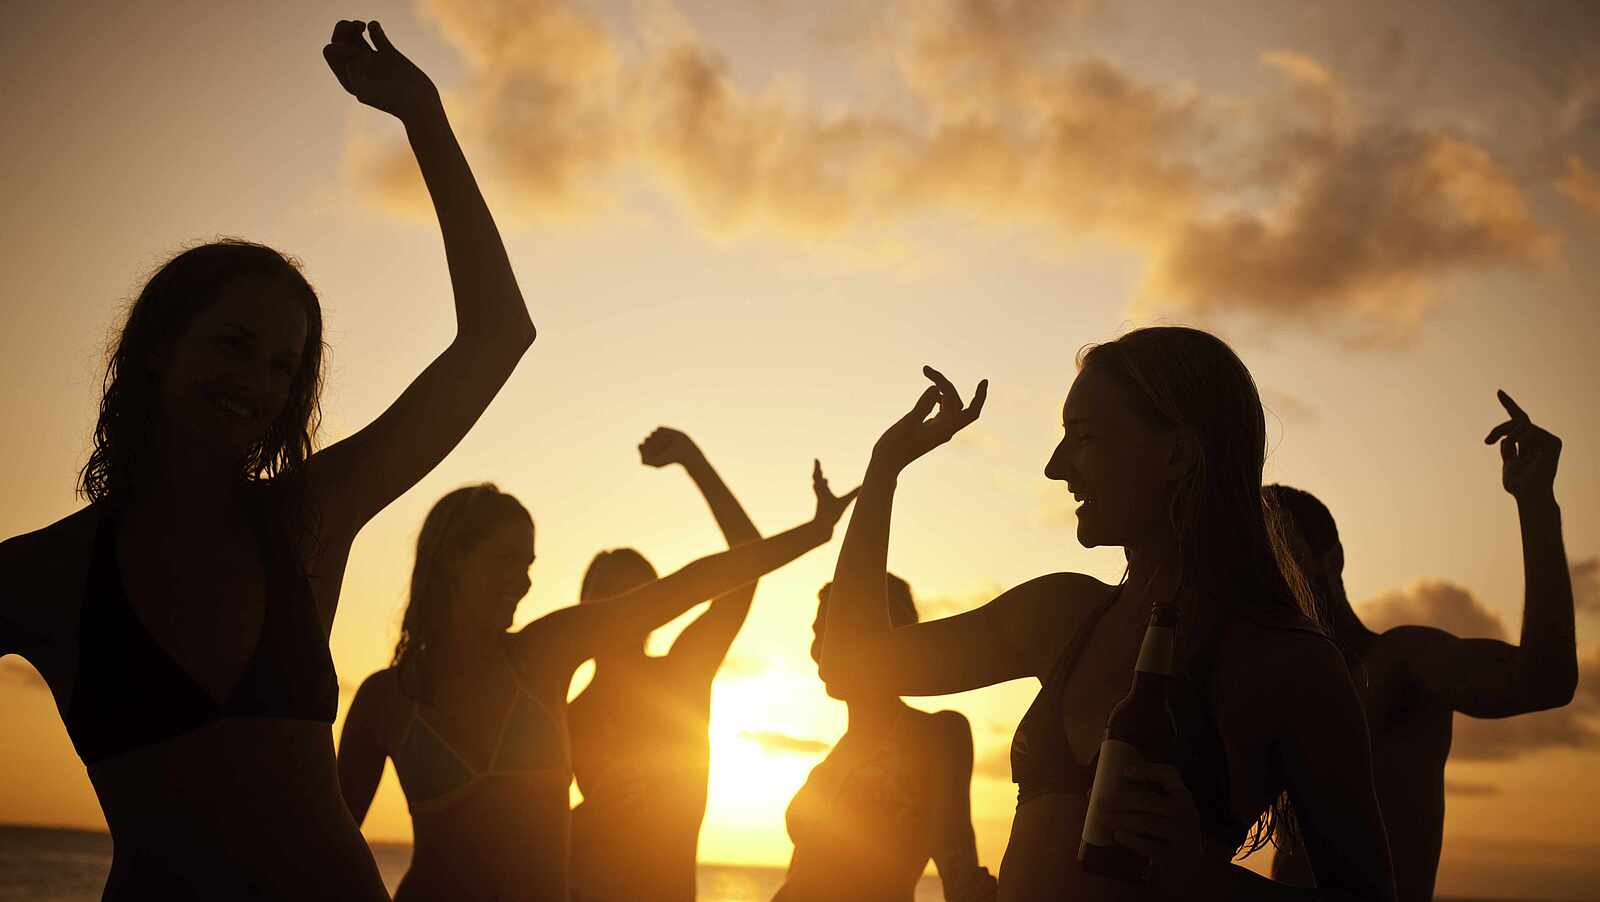 Ein Gruppe von Menschen tanzt beim Sonnenuntergang am Strand, nur die Silhouetten sind zu erkennen.